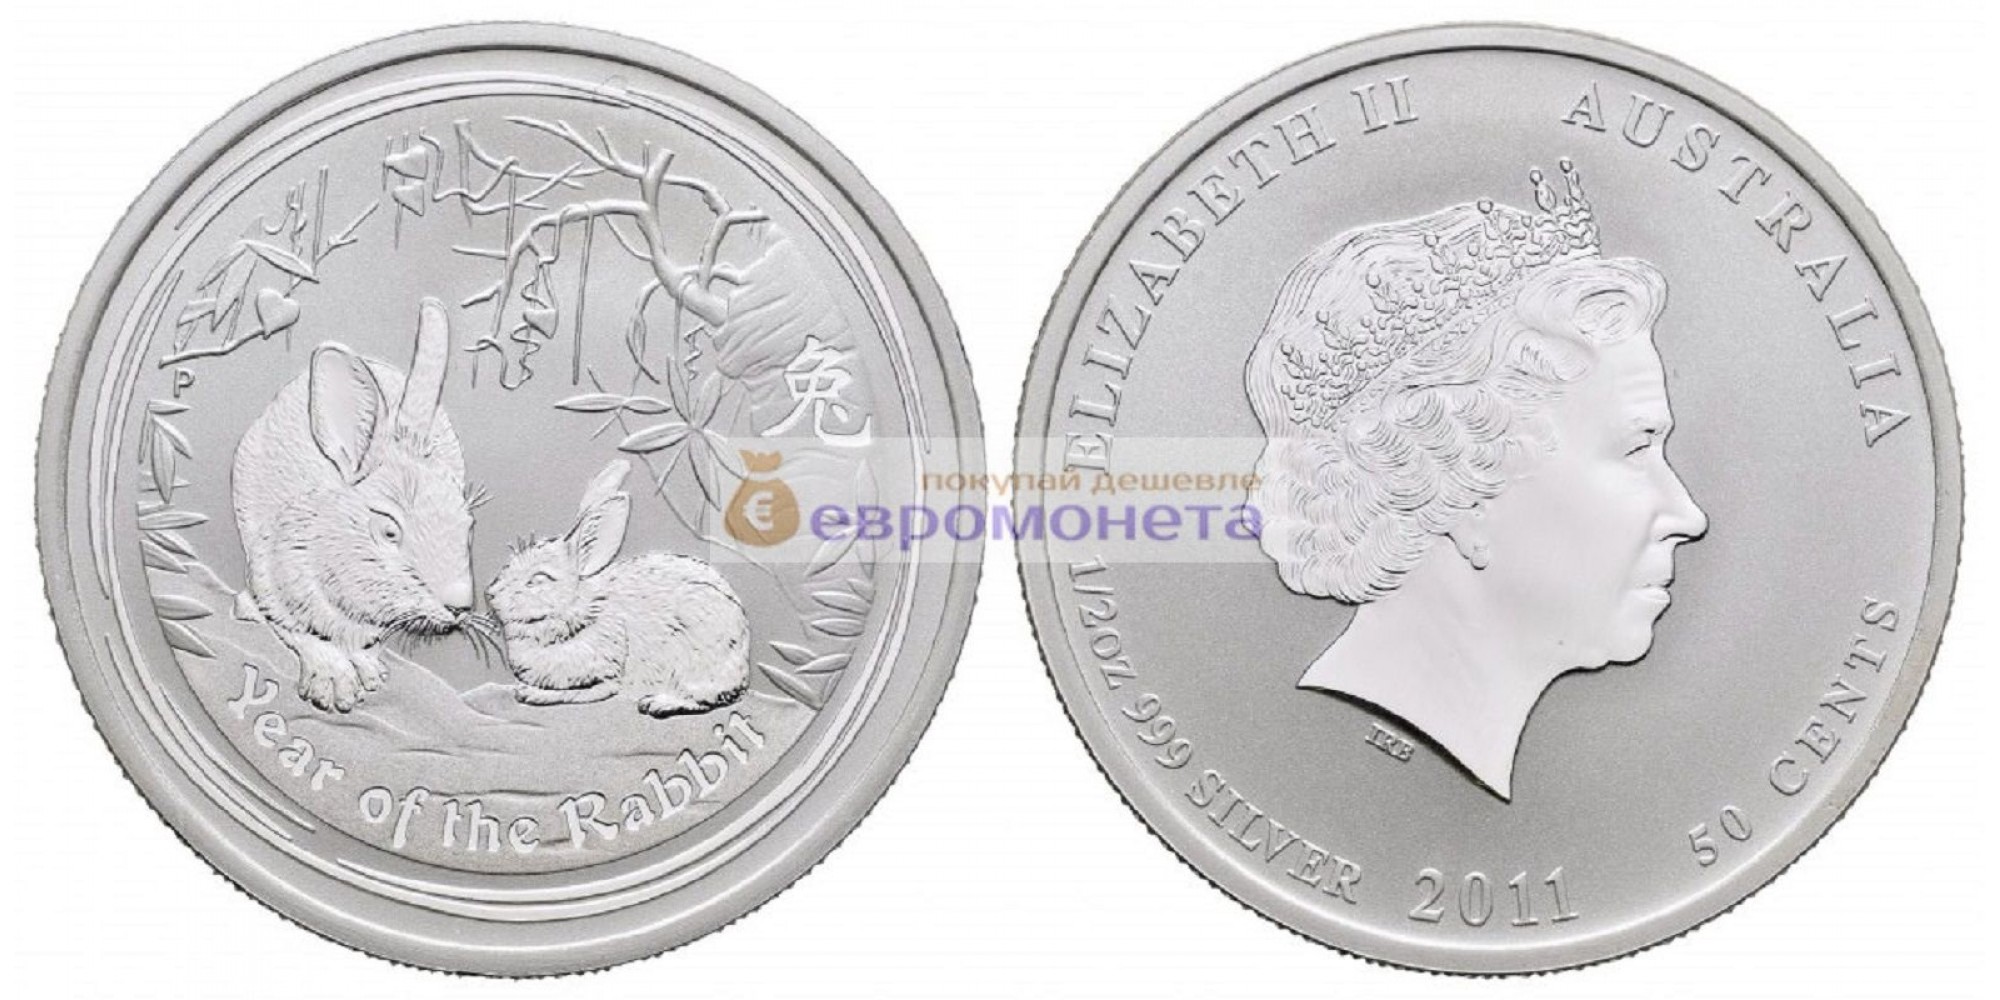 Австралия 50 центов 2011 год. Год кролика. Серебро. пруф / proof